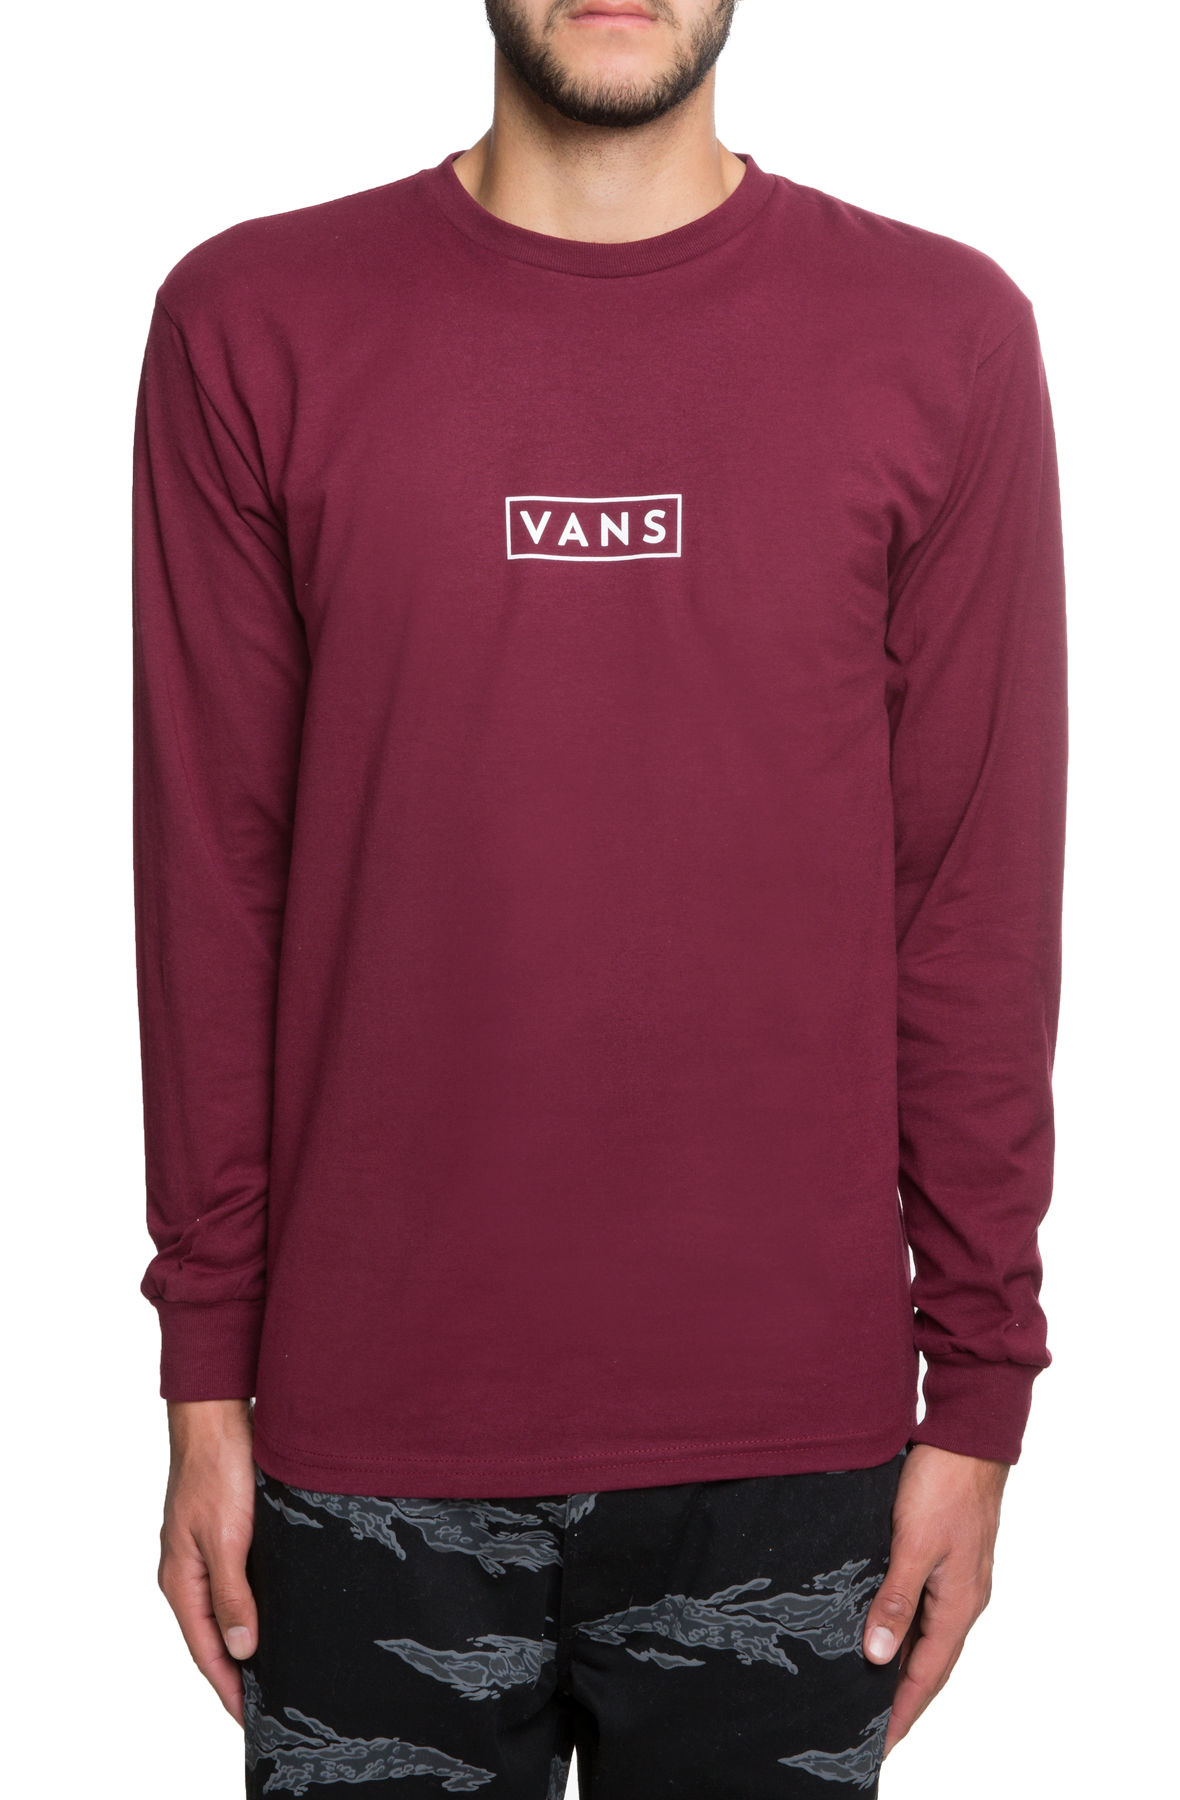 burgundy and white vans shirt